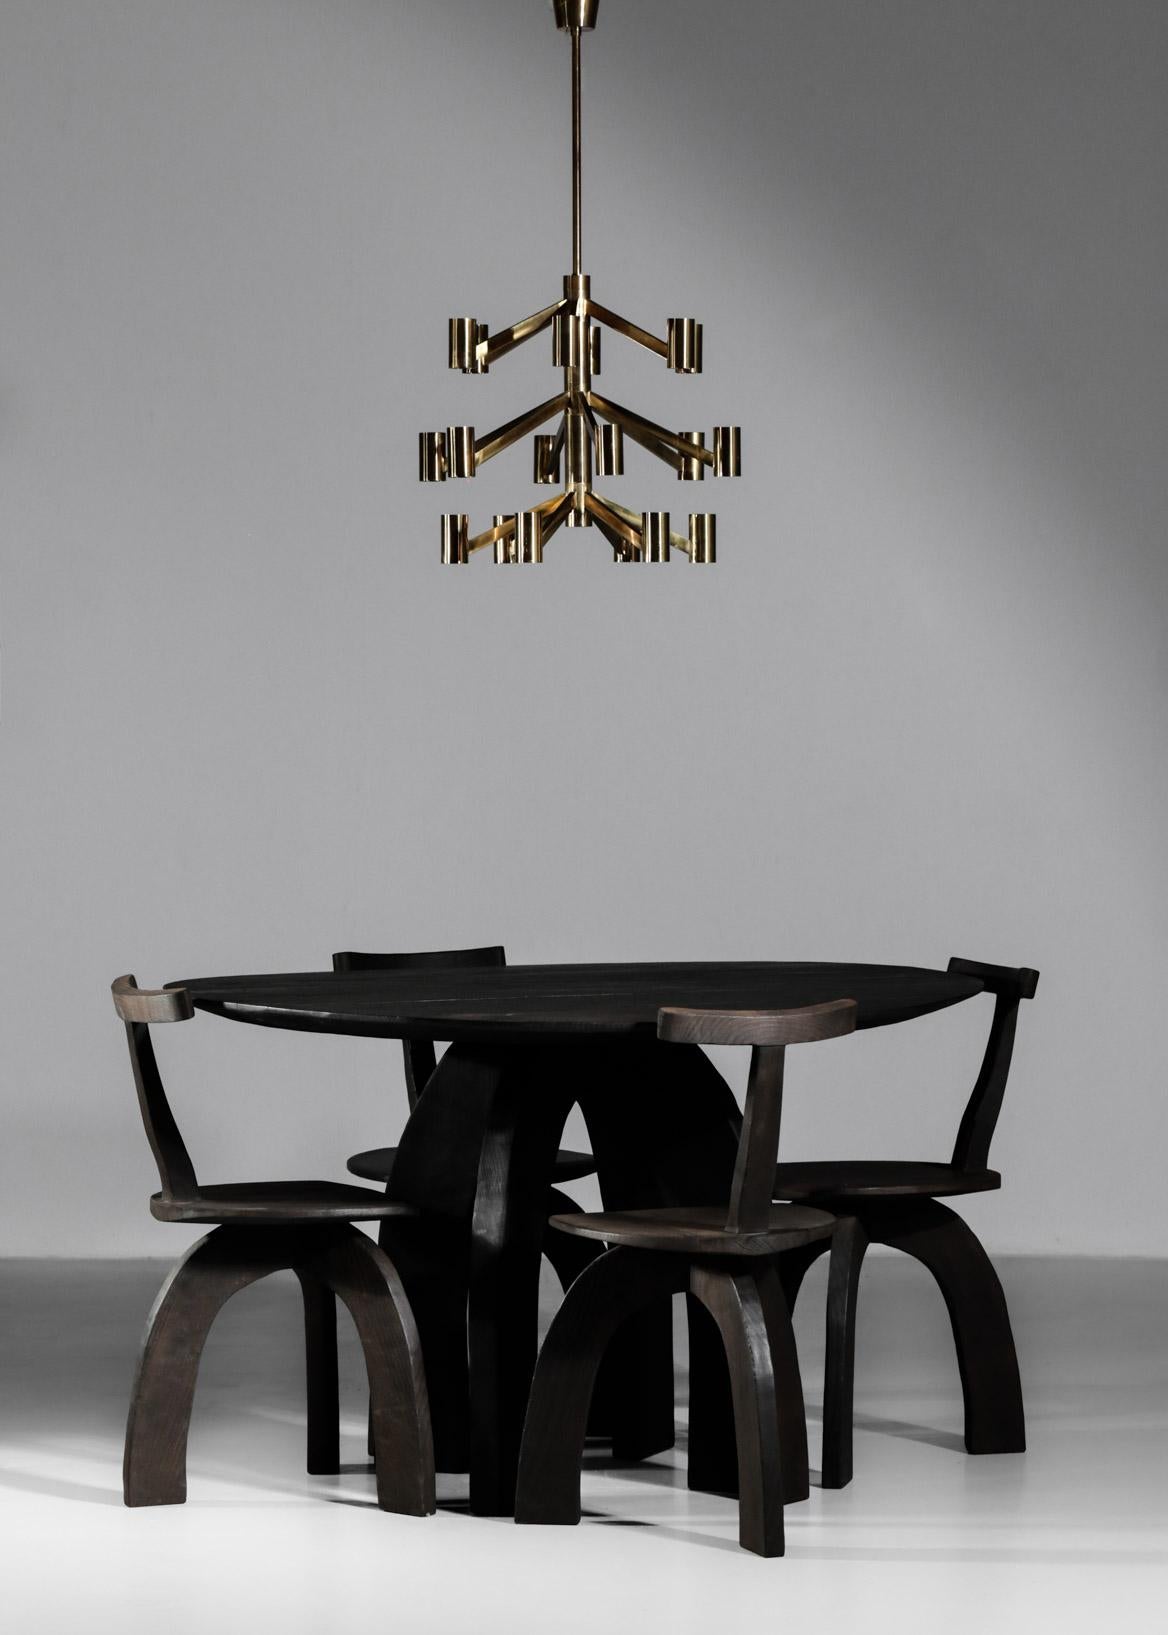 Die Danke Galerie freut sich, Ihnen die neueste Kreation des Schreiners Vincent Vincent vorzustellen, einen runden Tisch aus gebranntem Massivholz, der vollständig in Lyon handgefertigt wurde. Dieser Tisch ergänzt die Stühle und Sessel, die bereits